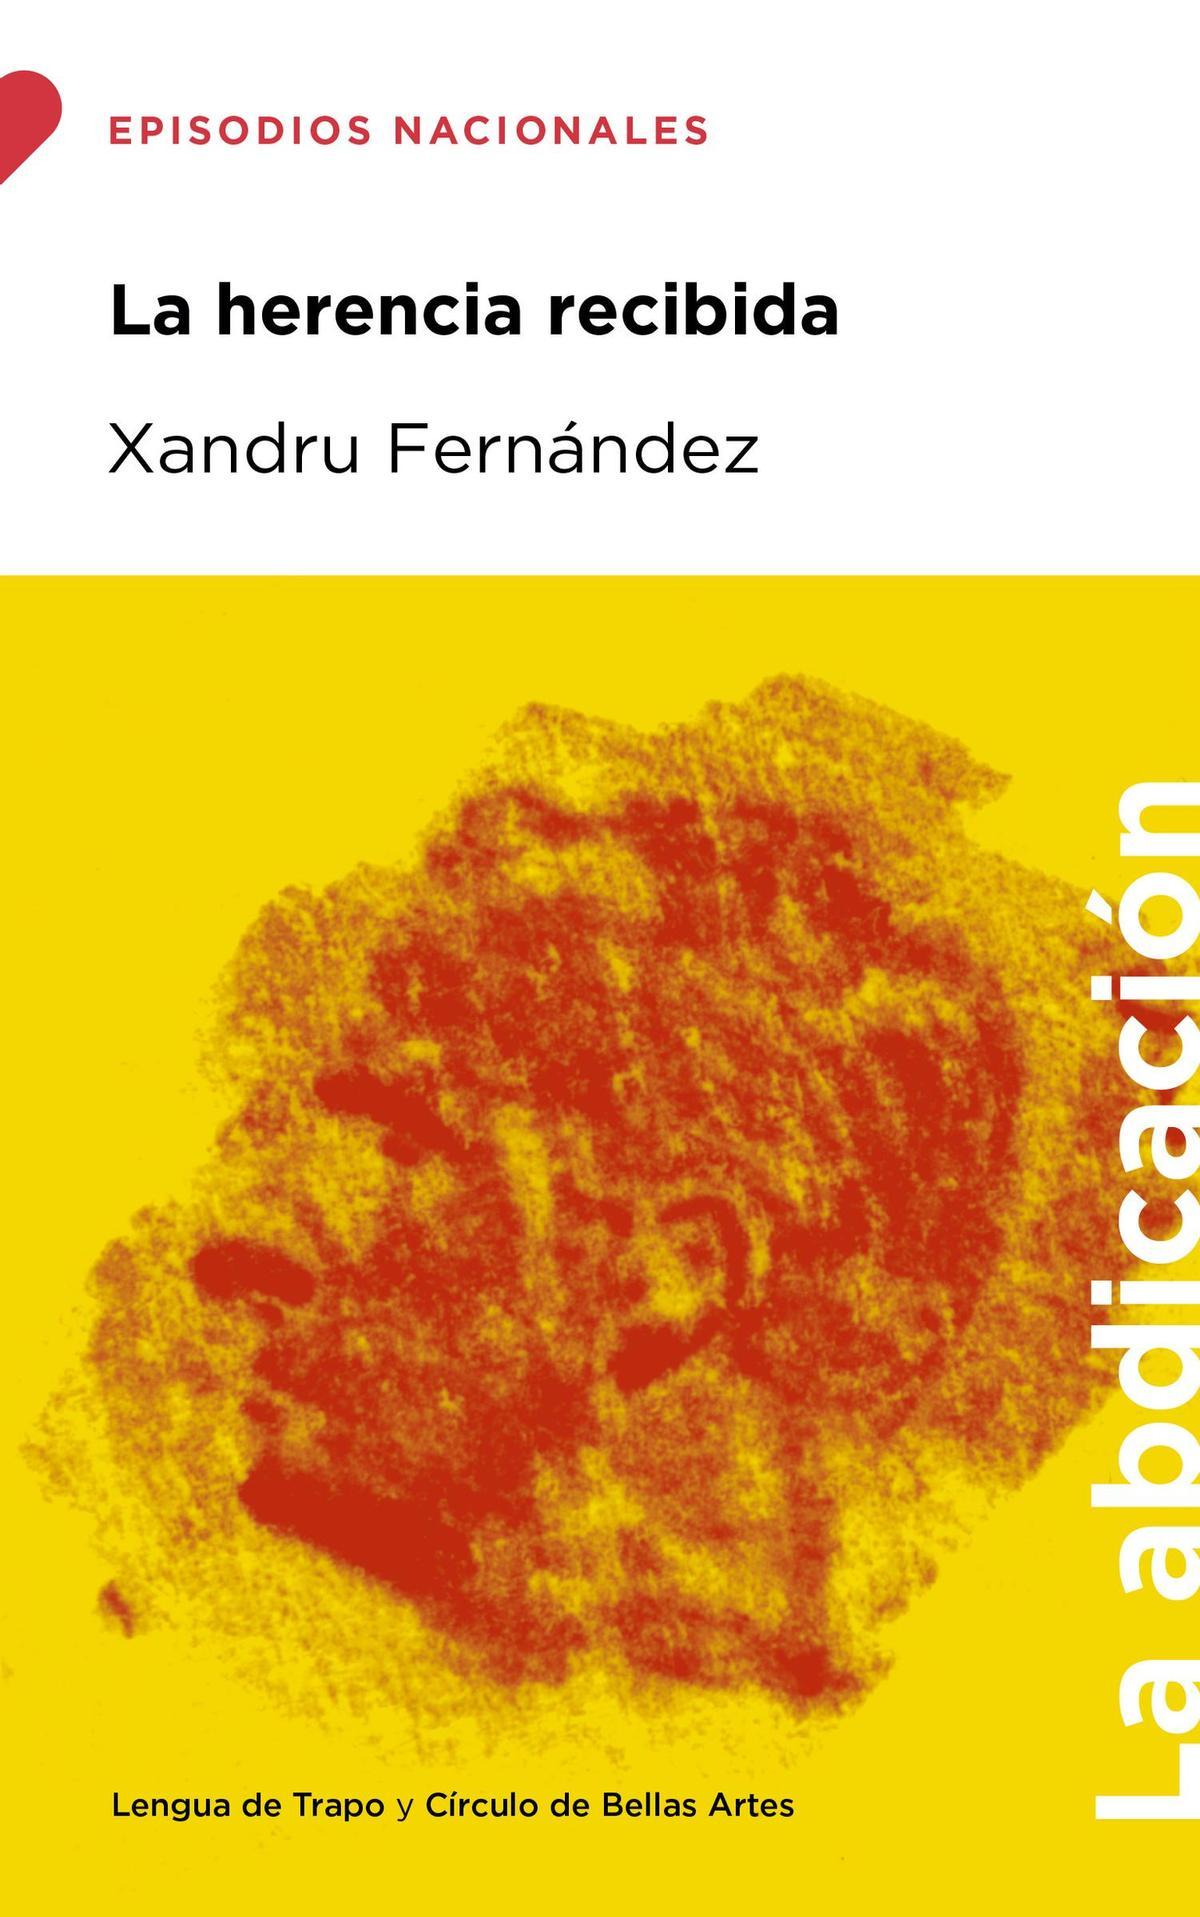 'La herencia recibida', de Xandru Fernández